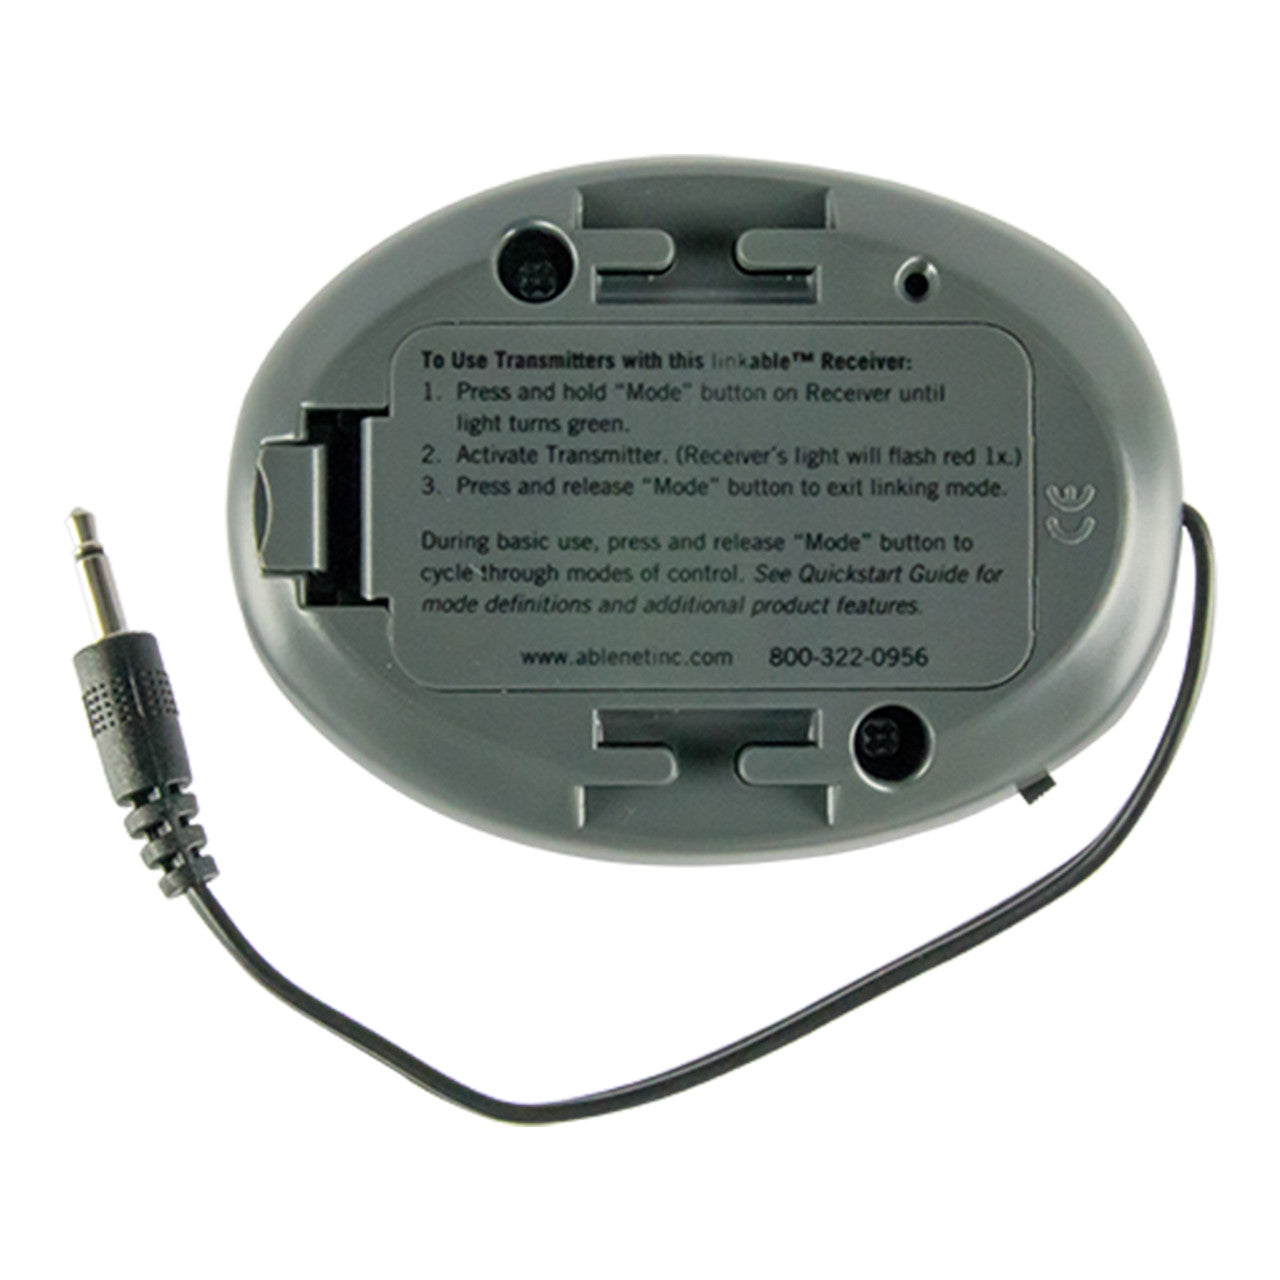 Original Wireless Receiver bottom